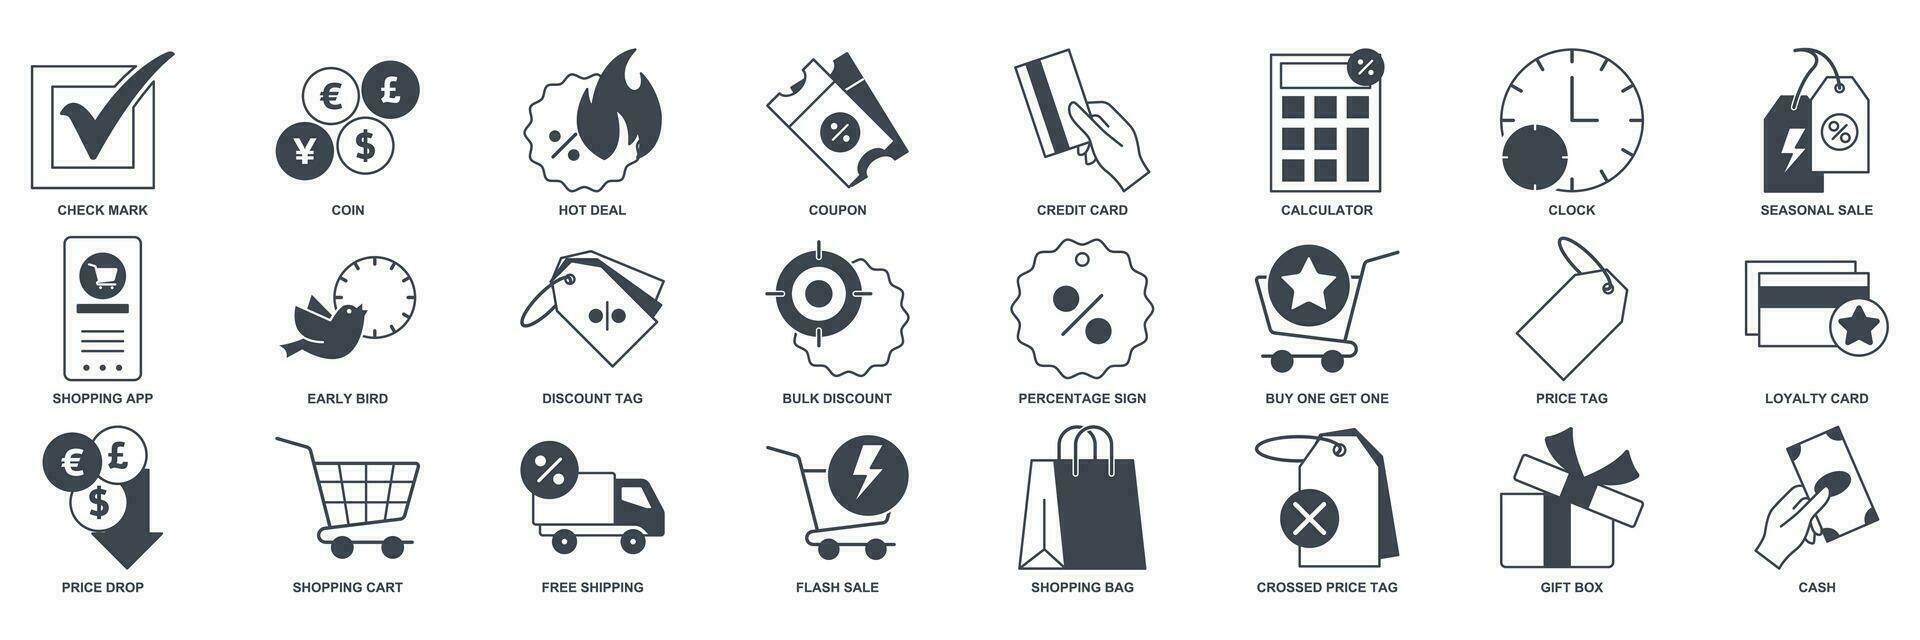 descuento icono colocar, incluido íconos como precio etiqueta, temprano pájaro, compras bolsa, crédito tarjeta y más símbolos recopilación, logo aislado vector ilustración